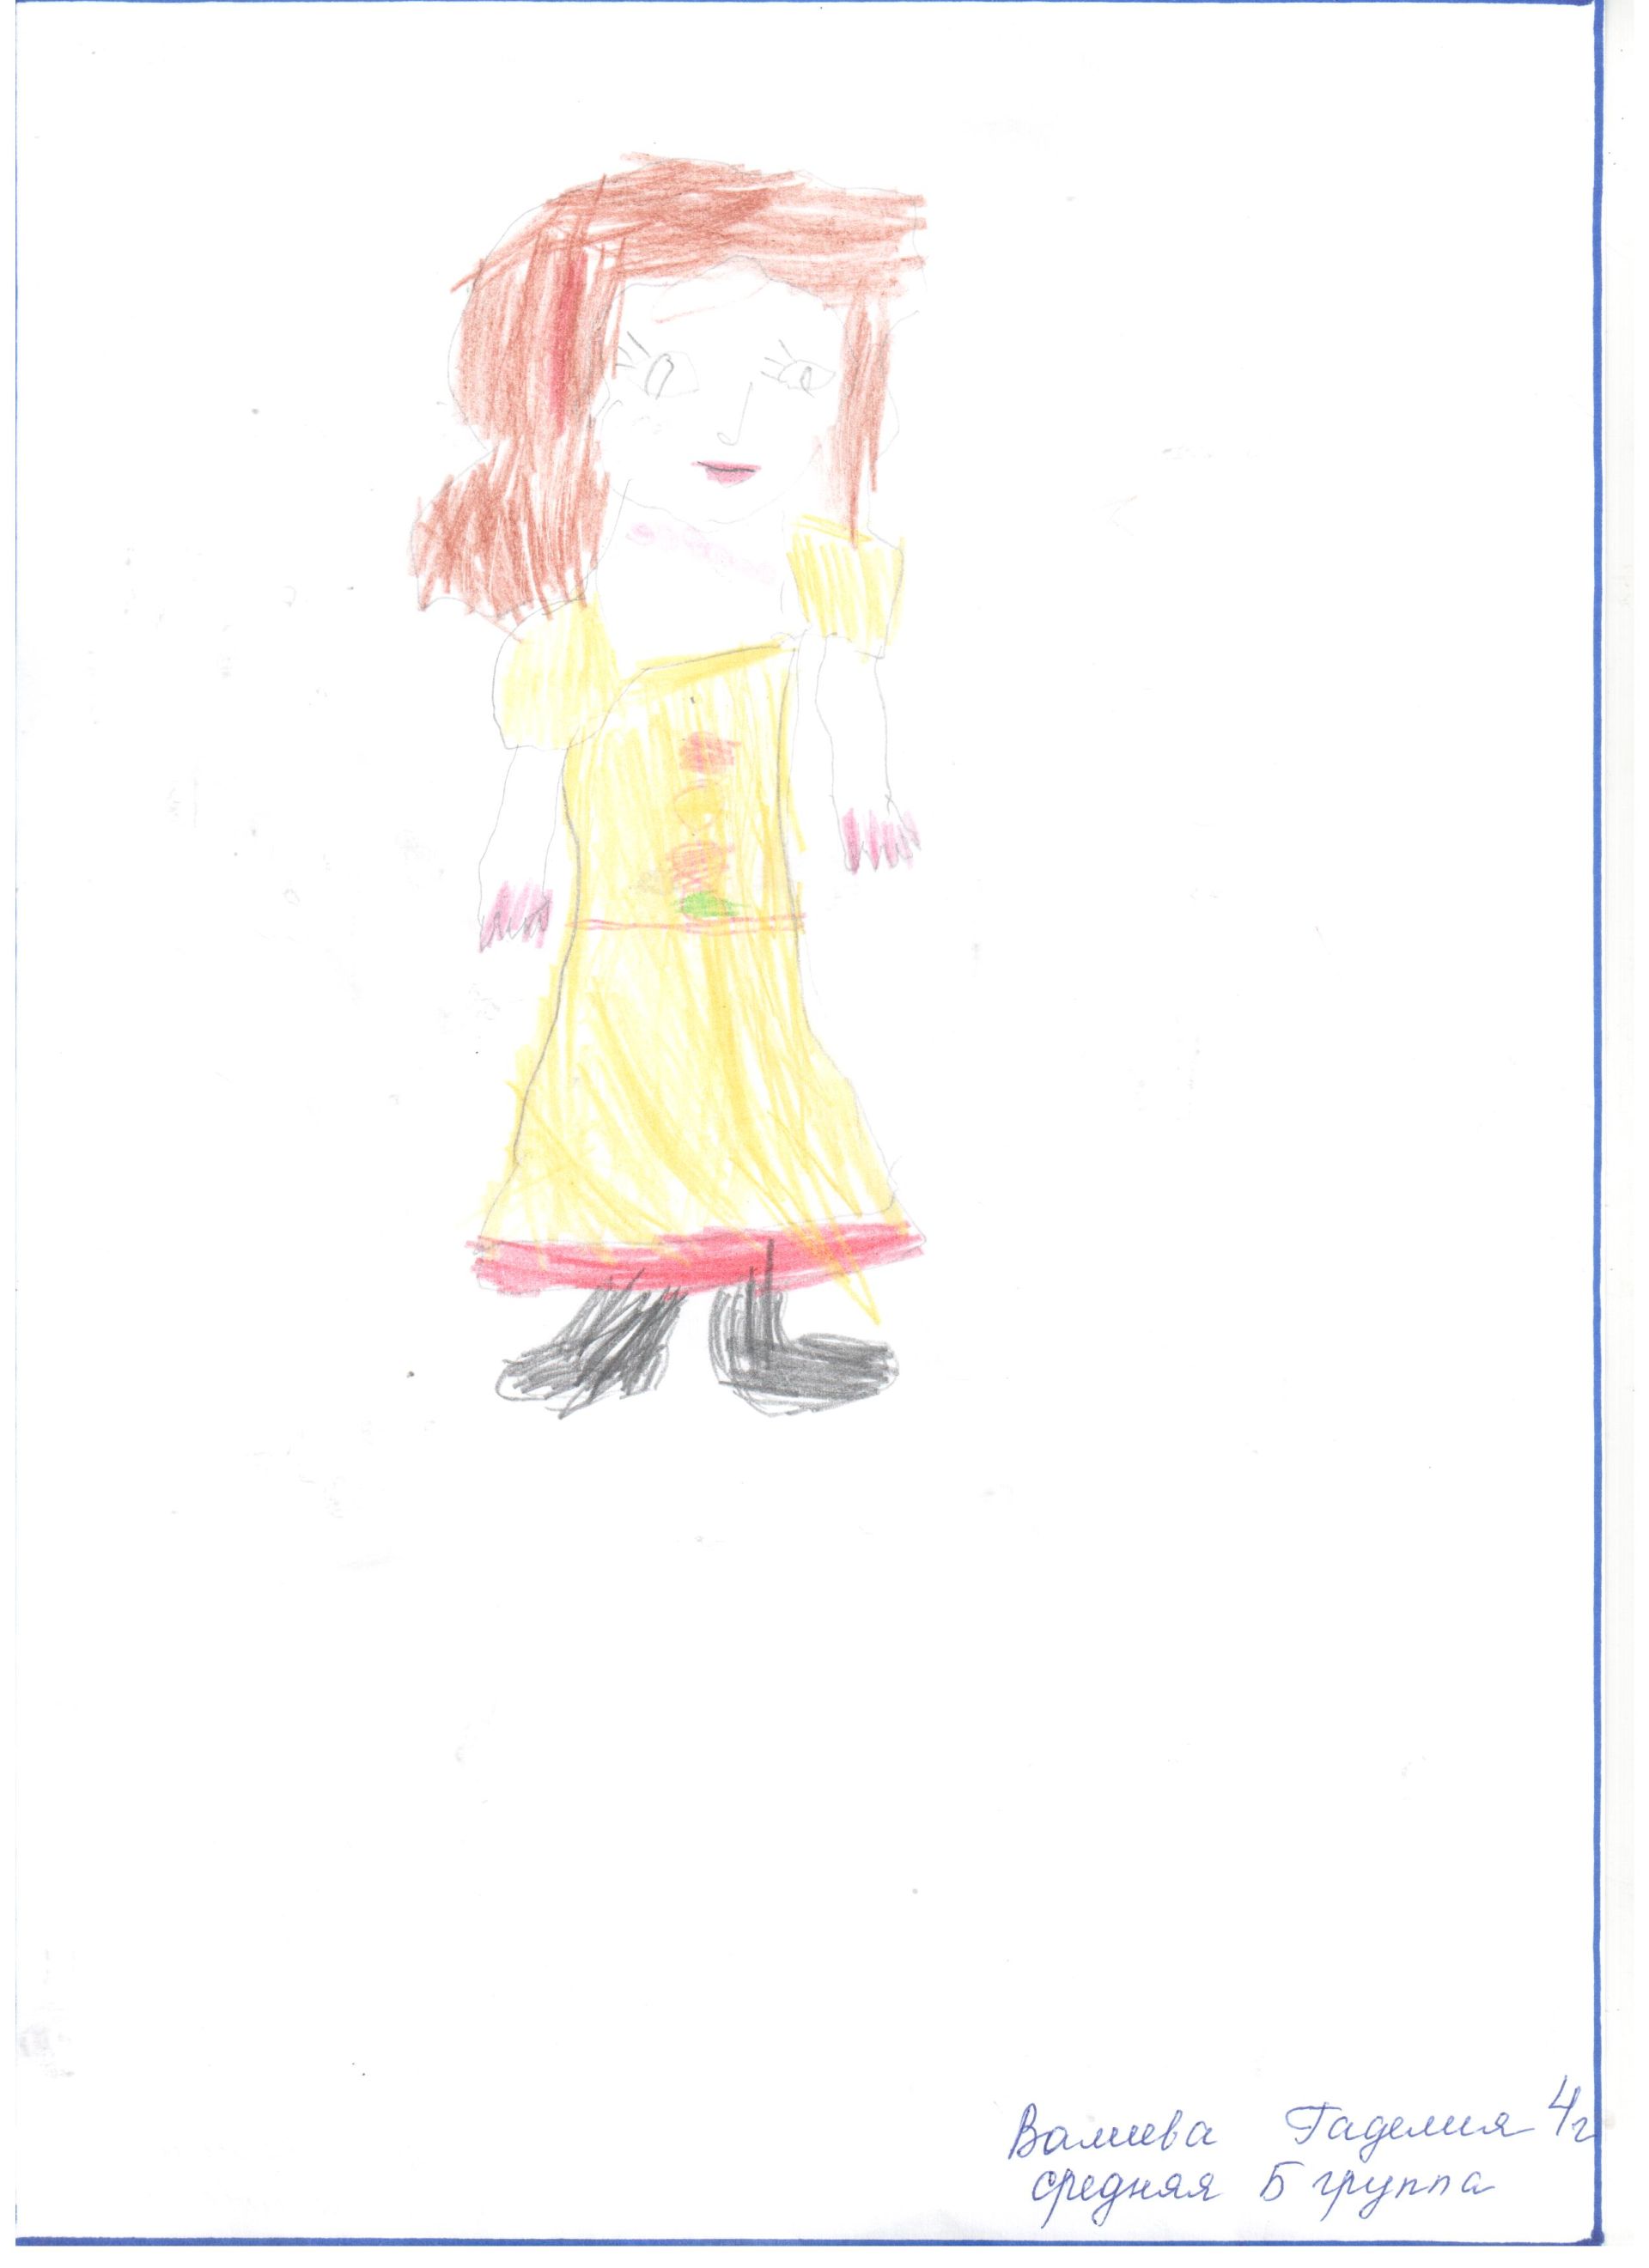 Рисунки детей, которые получила редакция ко Дню Мам